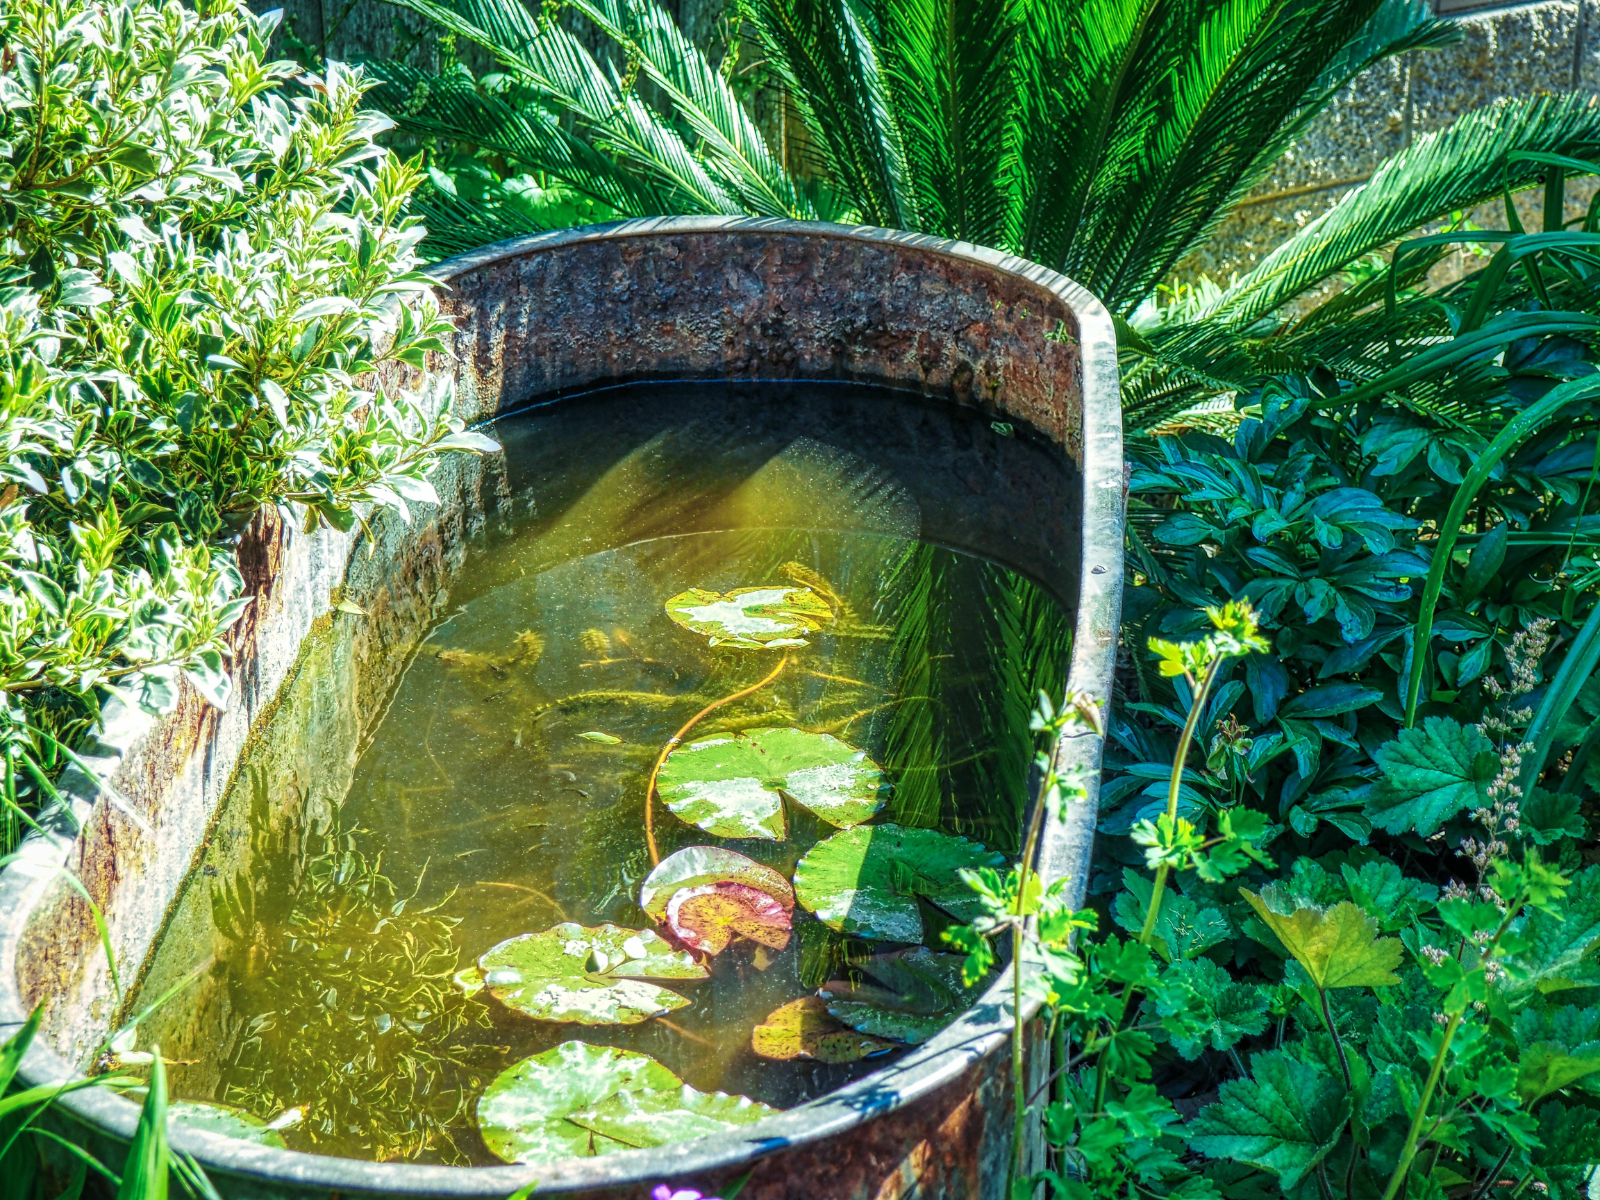 Une vieille baignoire en zinc transformée en bassin peut apporter un charme fou à votre jardin ! © Mike, Adobe Stock